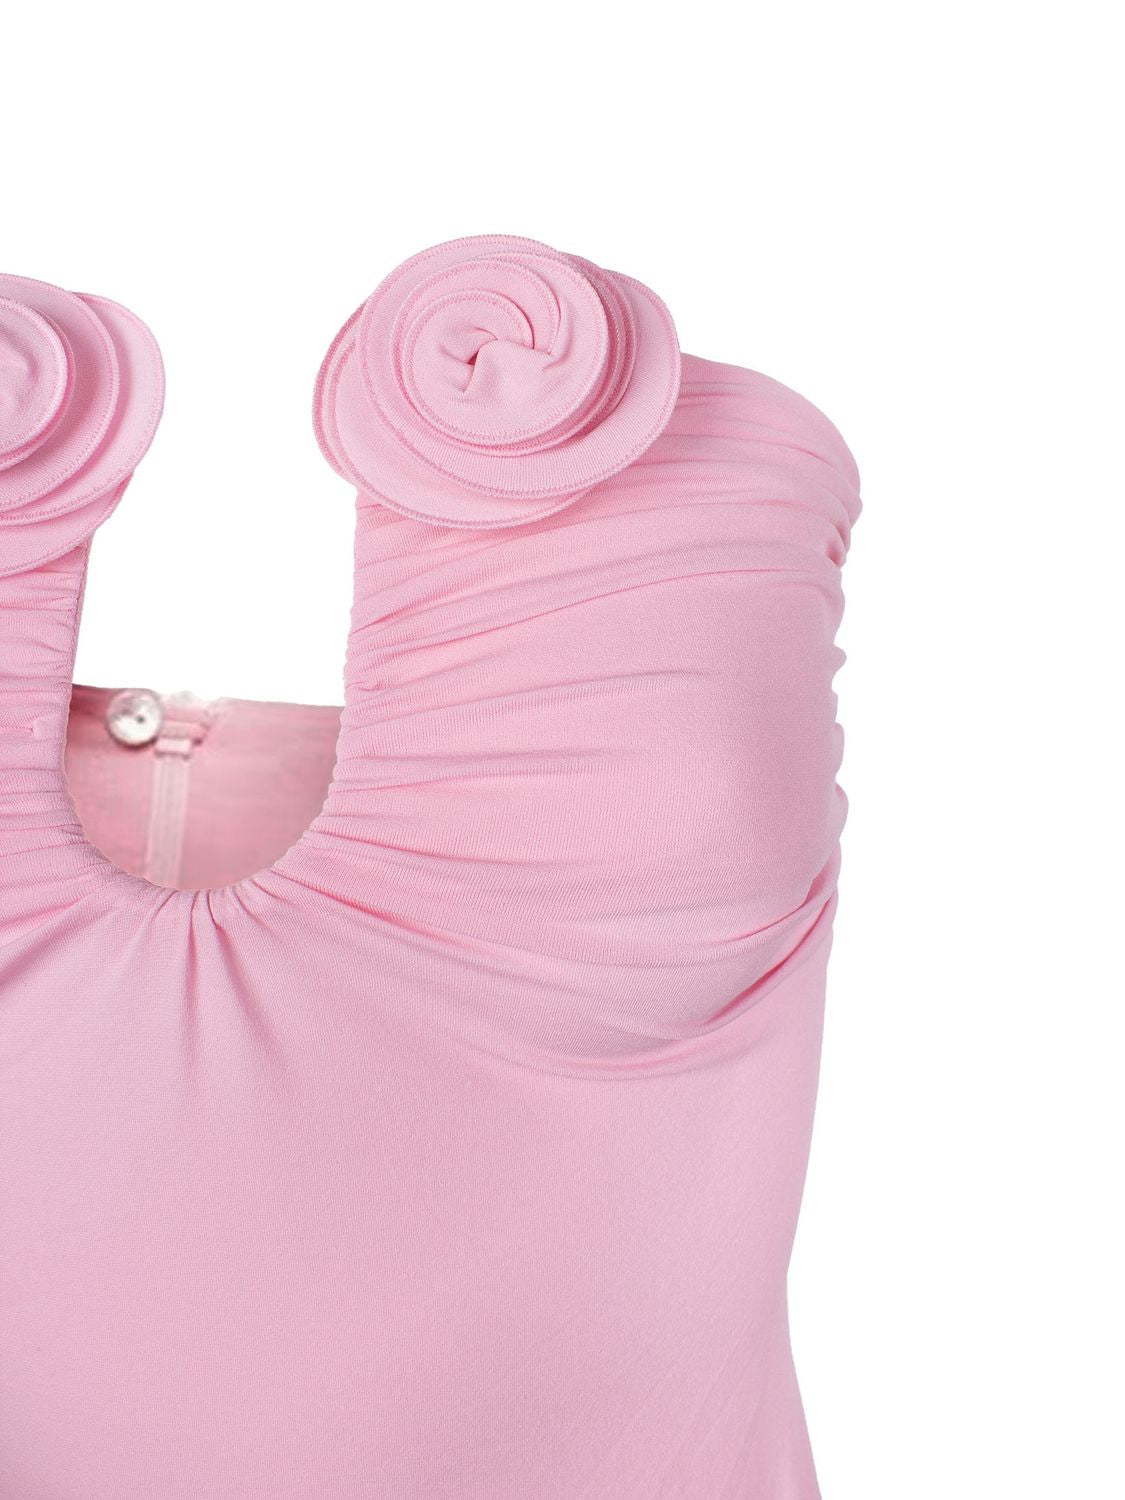 Đầm maxi không tay với hoa nổi bật màu hồng phấn thật sự hút mắt cho phái đẹp